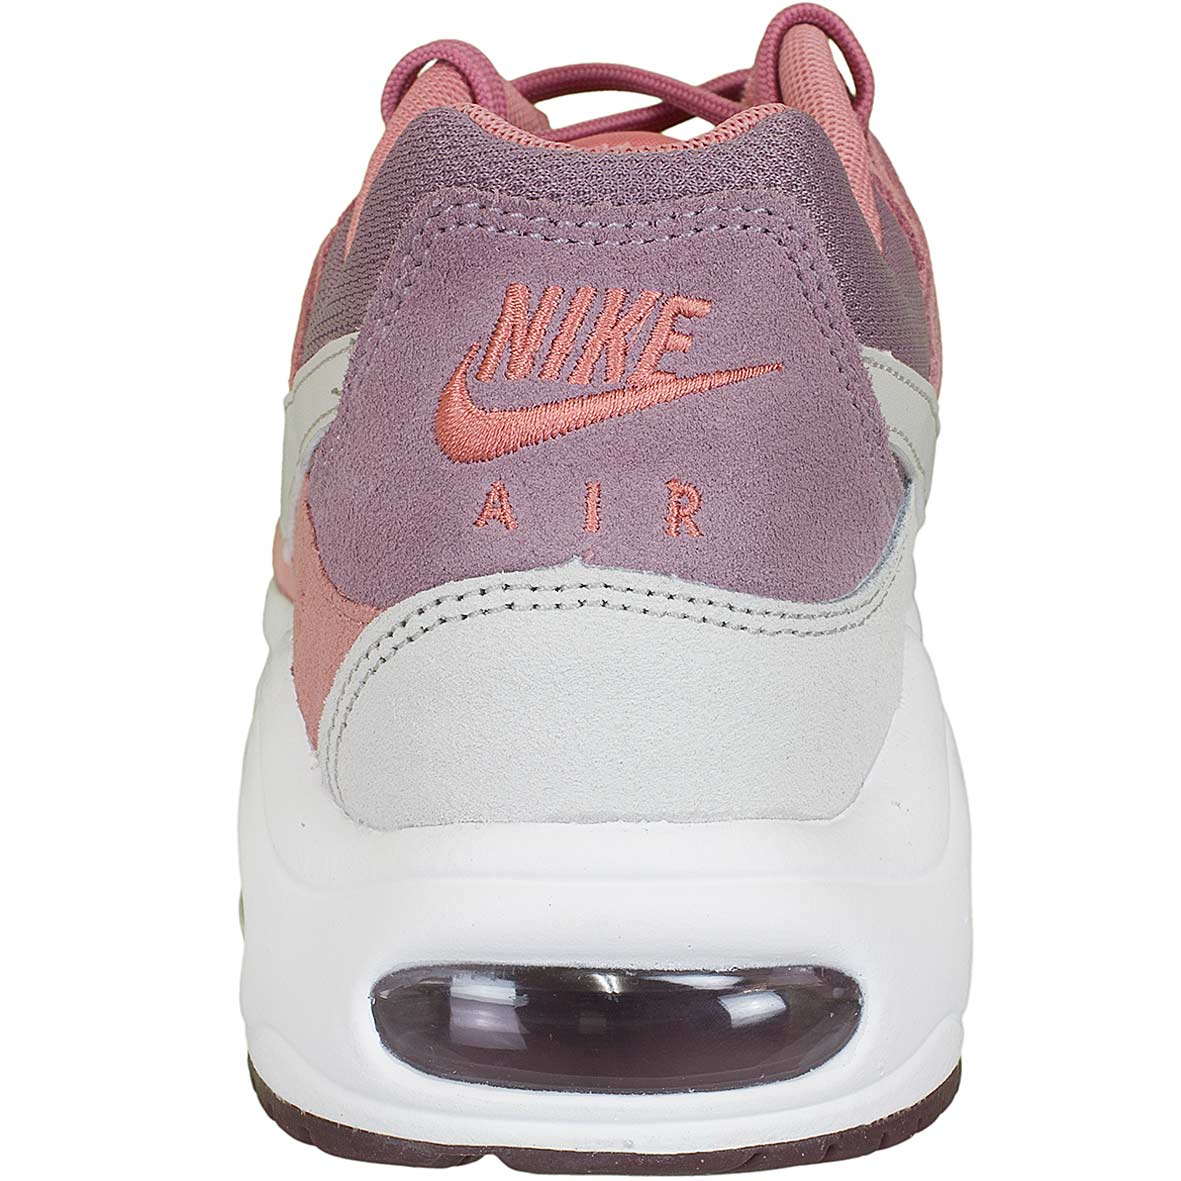 ☆ Nike Damen Sneaker Air Max Command rot/weiß - hier bestellen!